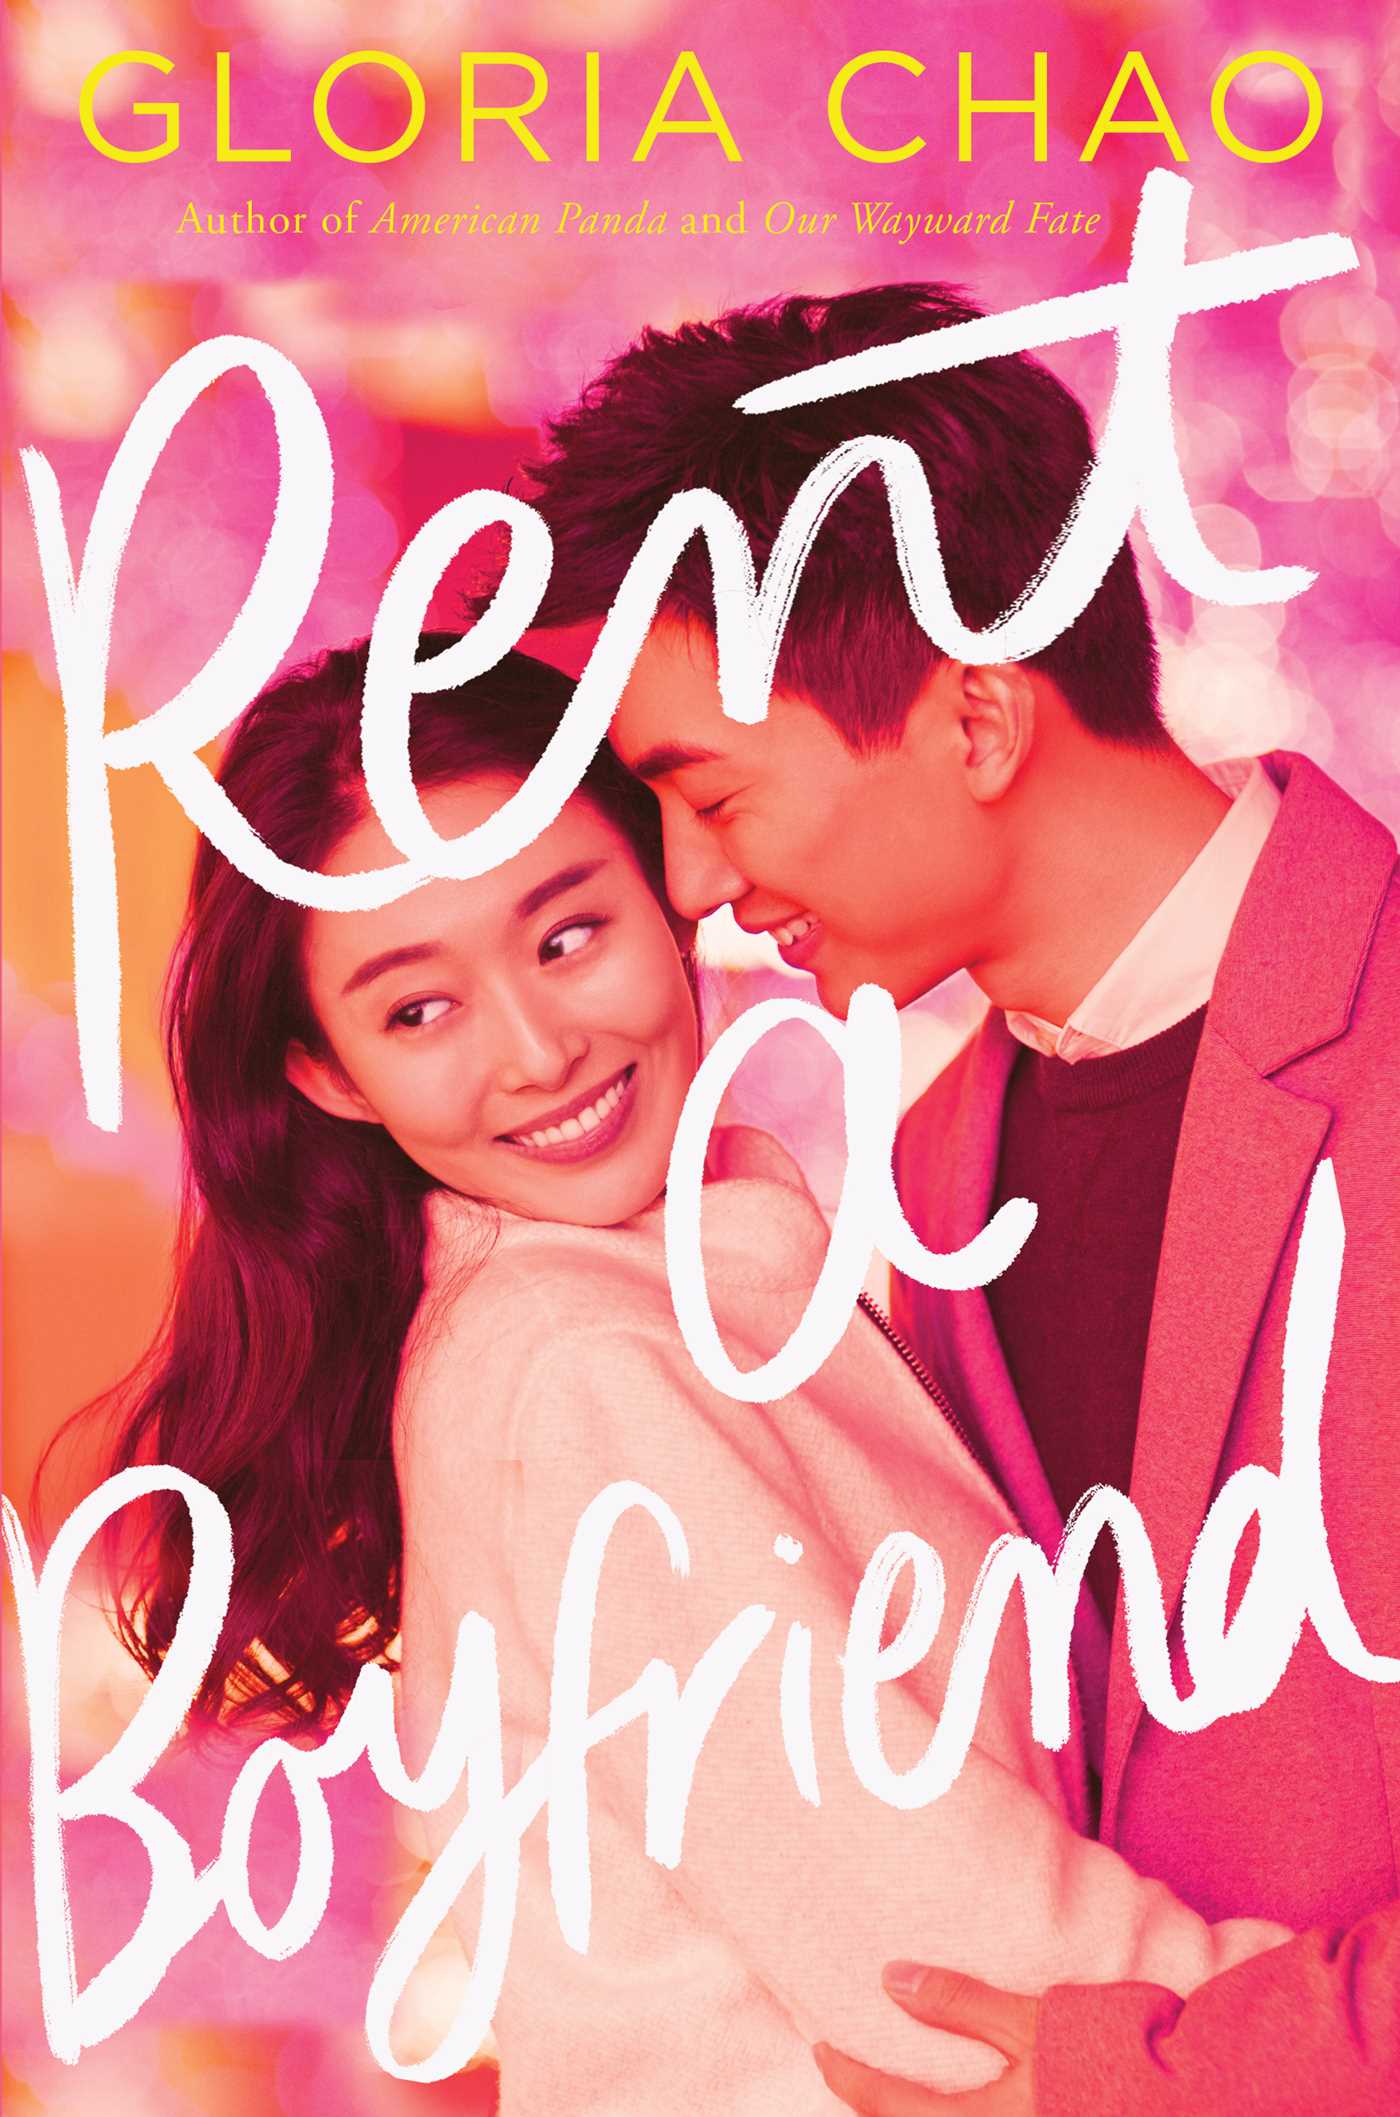 Rent a Boyfriend Book Cover